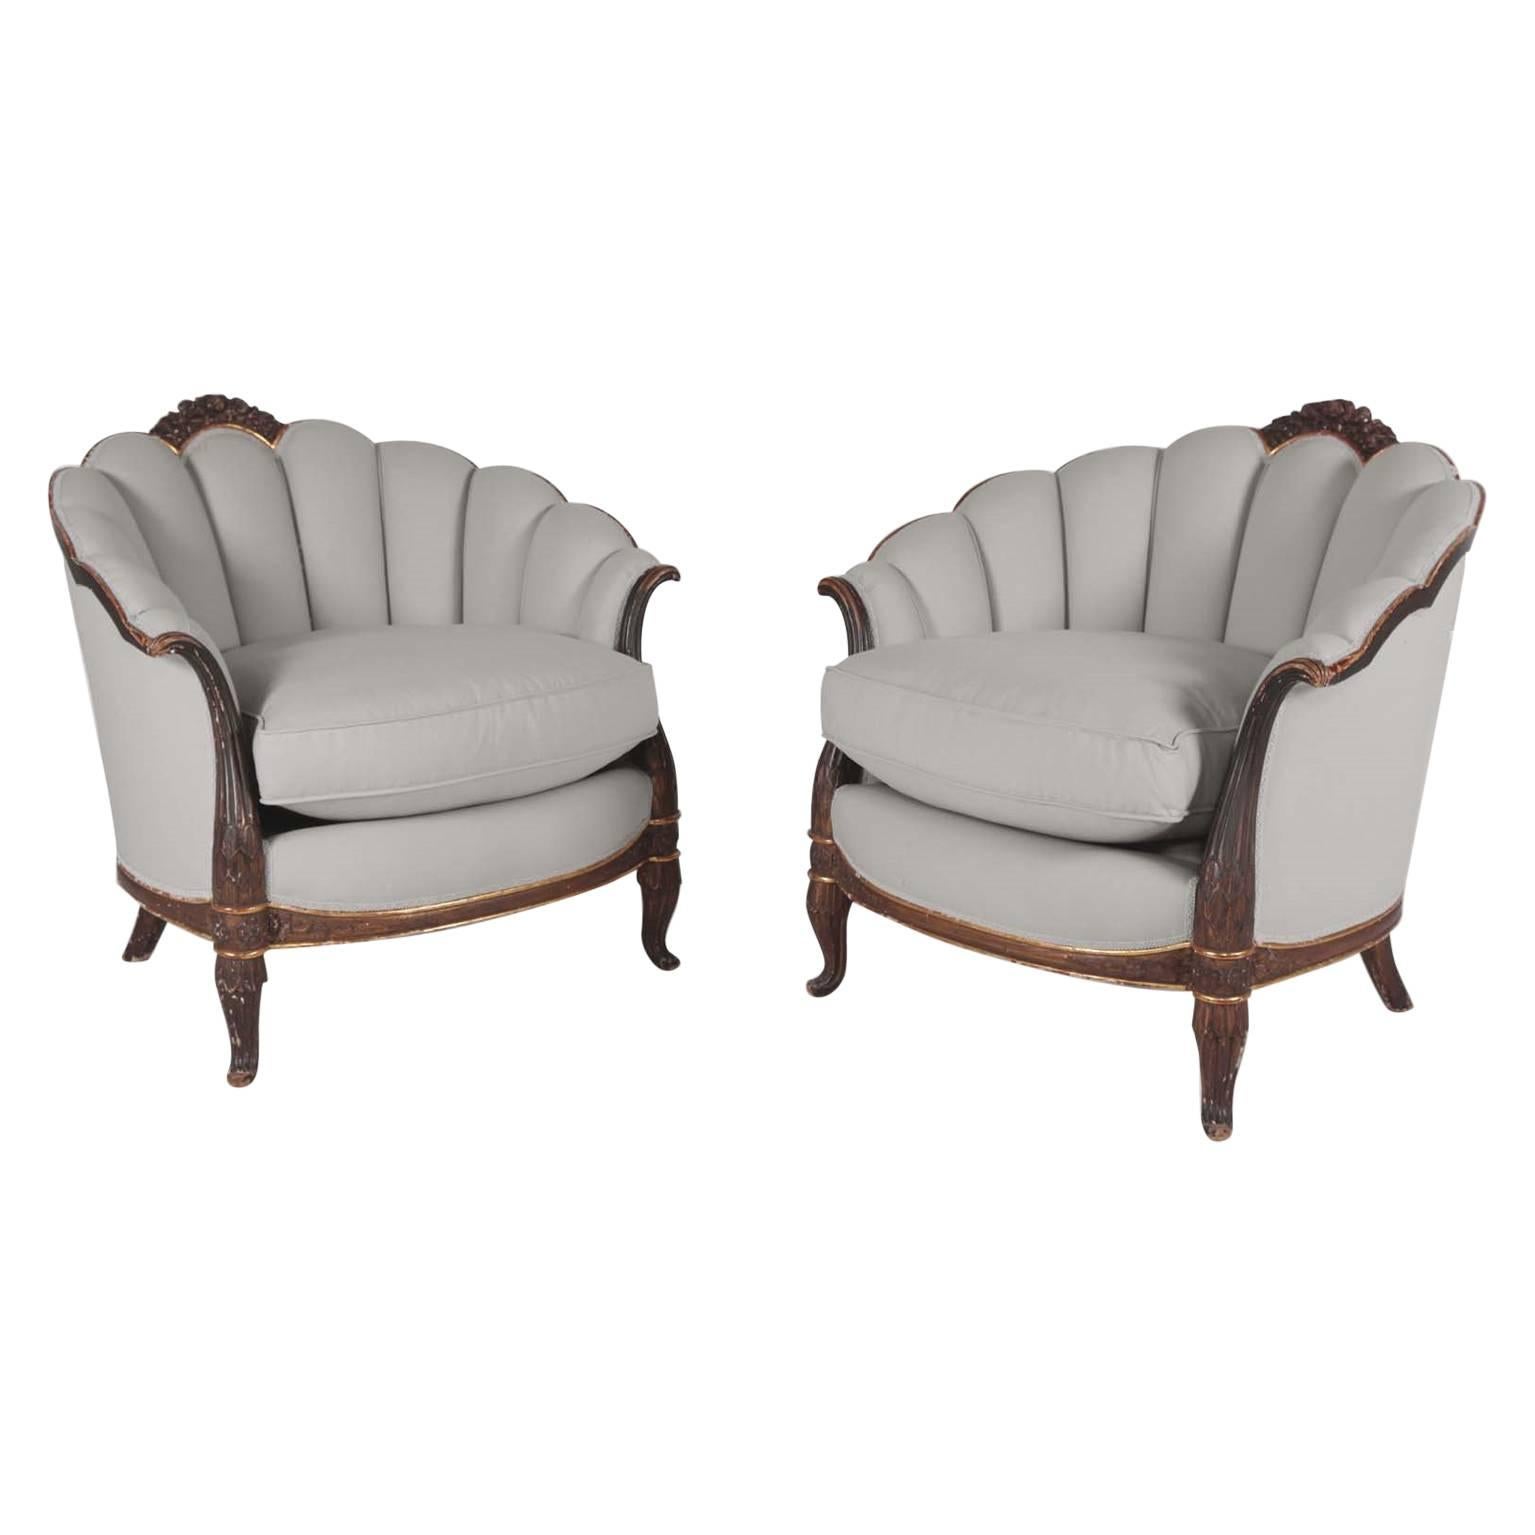 Magnifique paire de fauteuils français de 1925 conçus par Maurice Dufrne